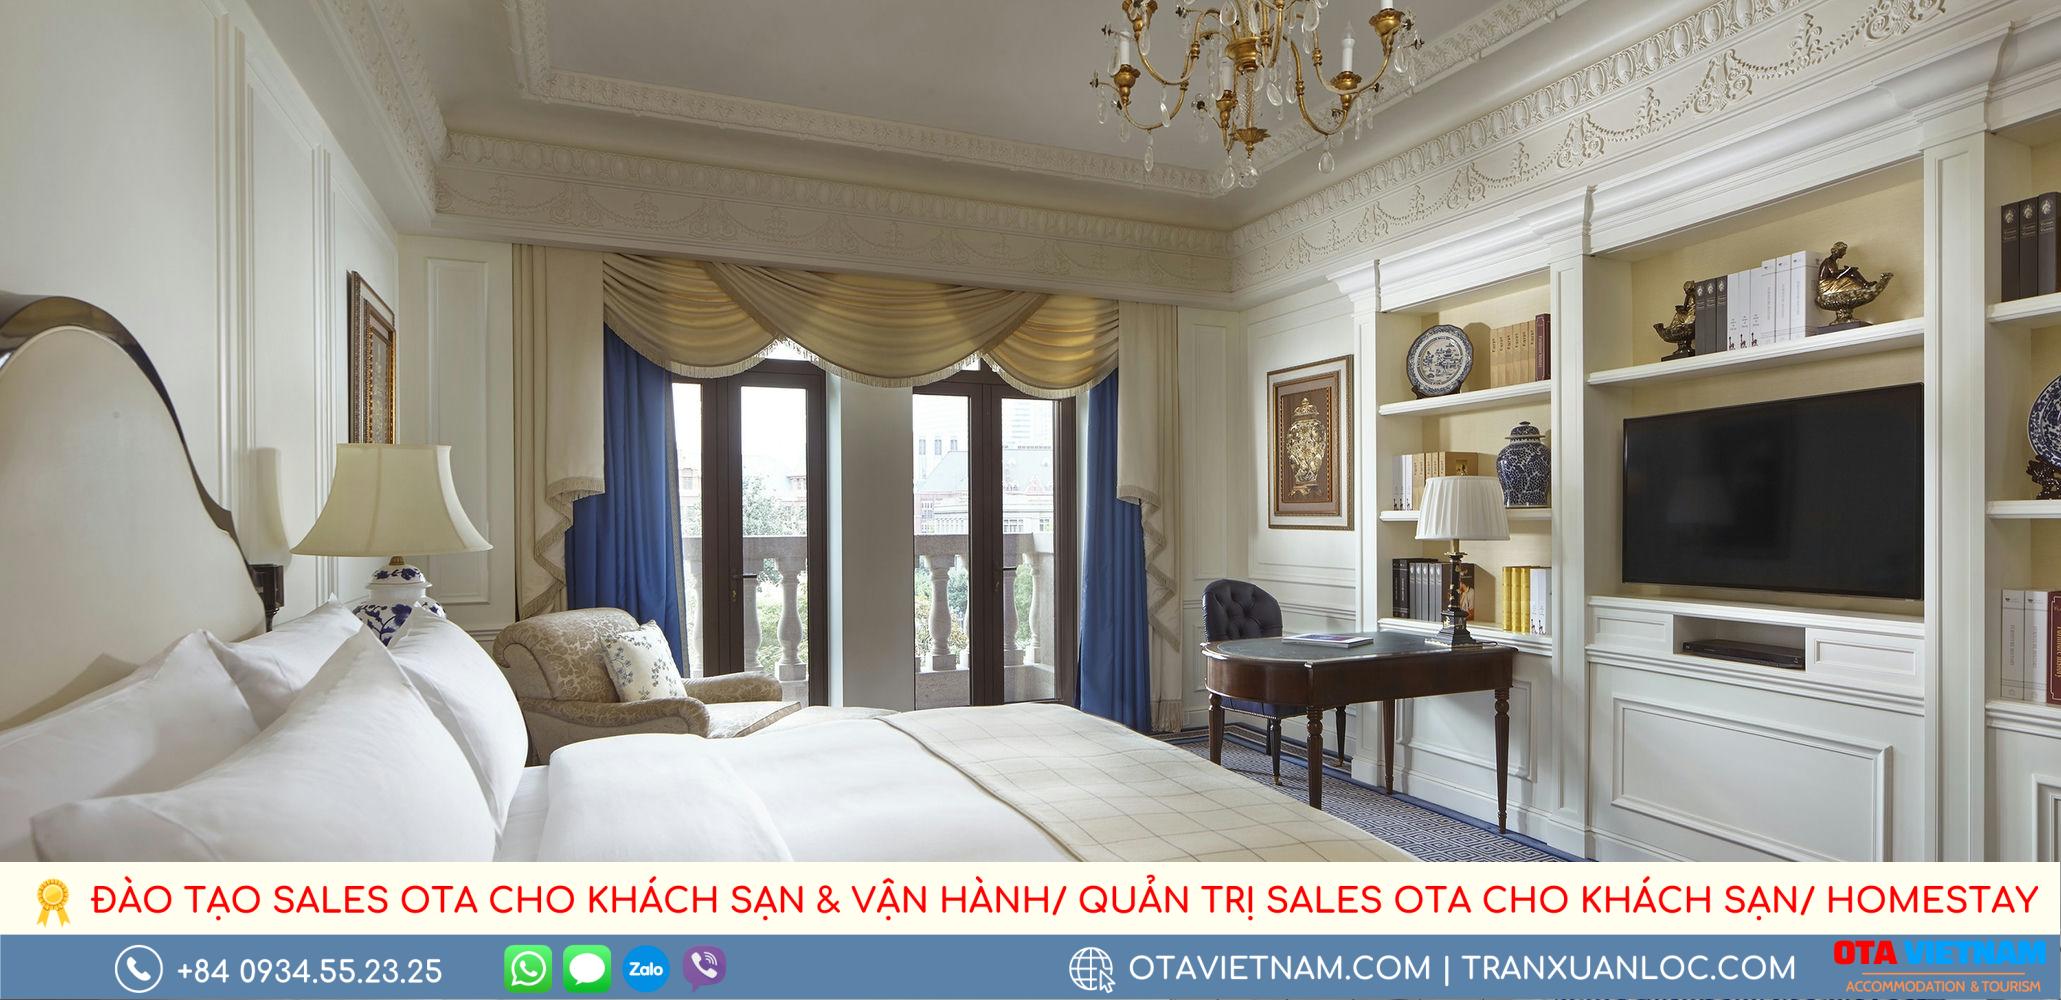 Tieu Chuan Vang Duoc Khoi Xuong Tu Chuoi Khach San Ritz Carlton Noi Tieng3 1000px